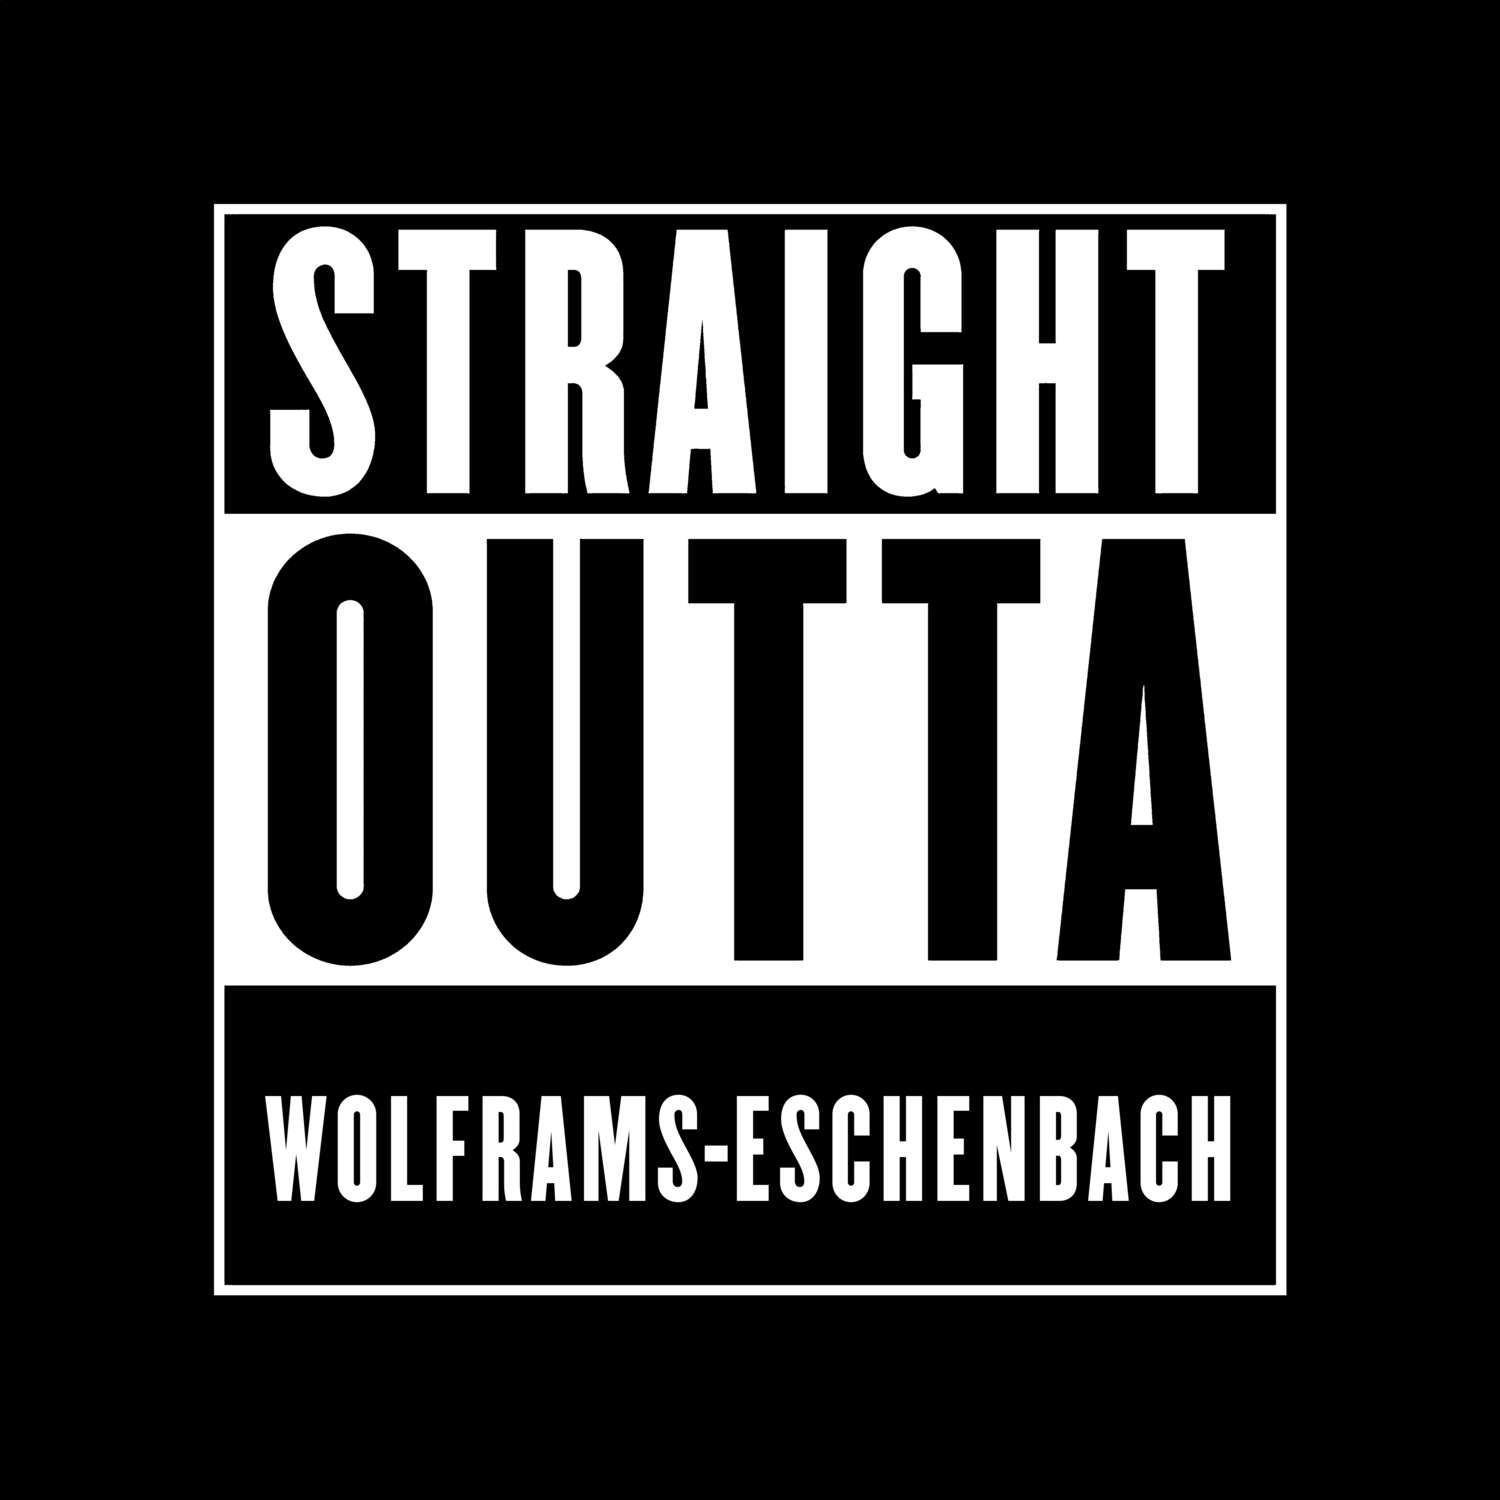 Wolframs-Eschenbach T-Shirt »Straight Outta«